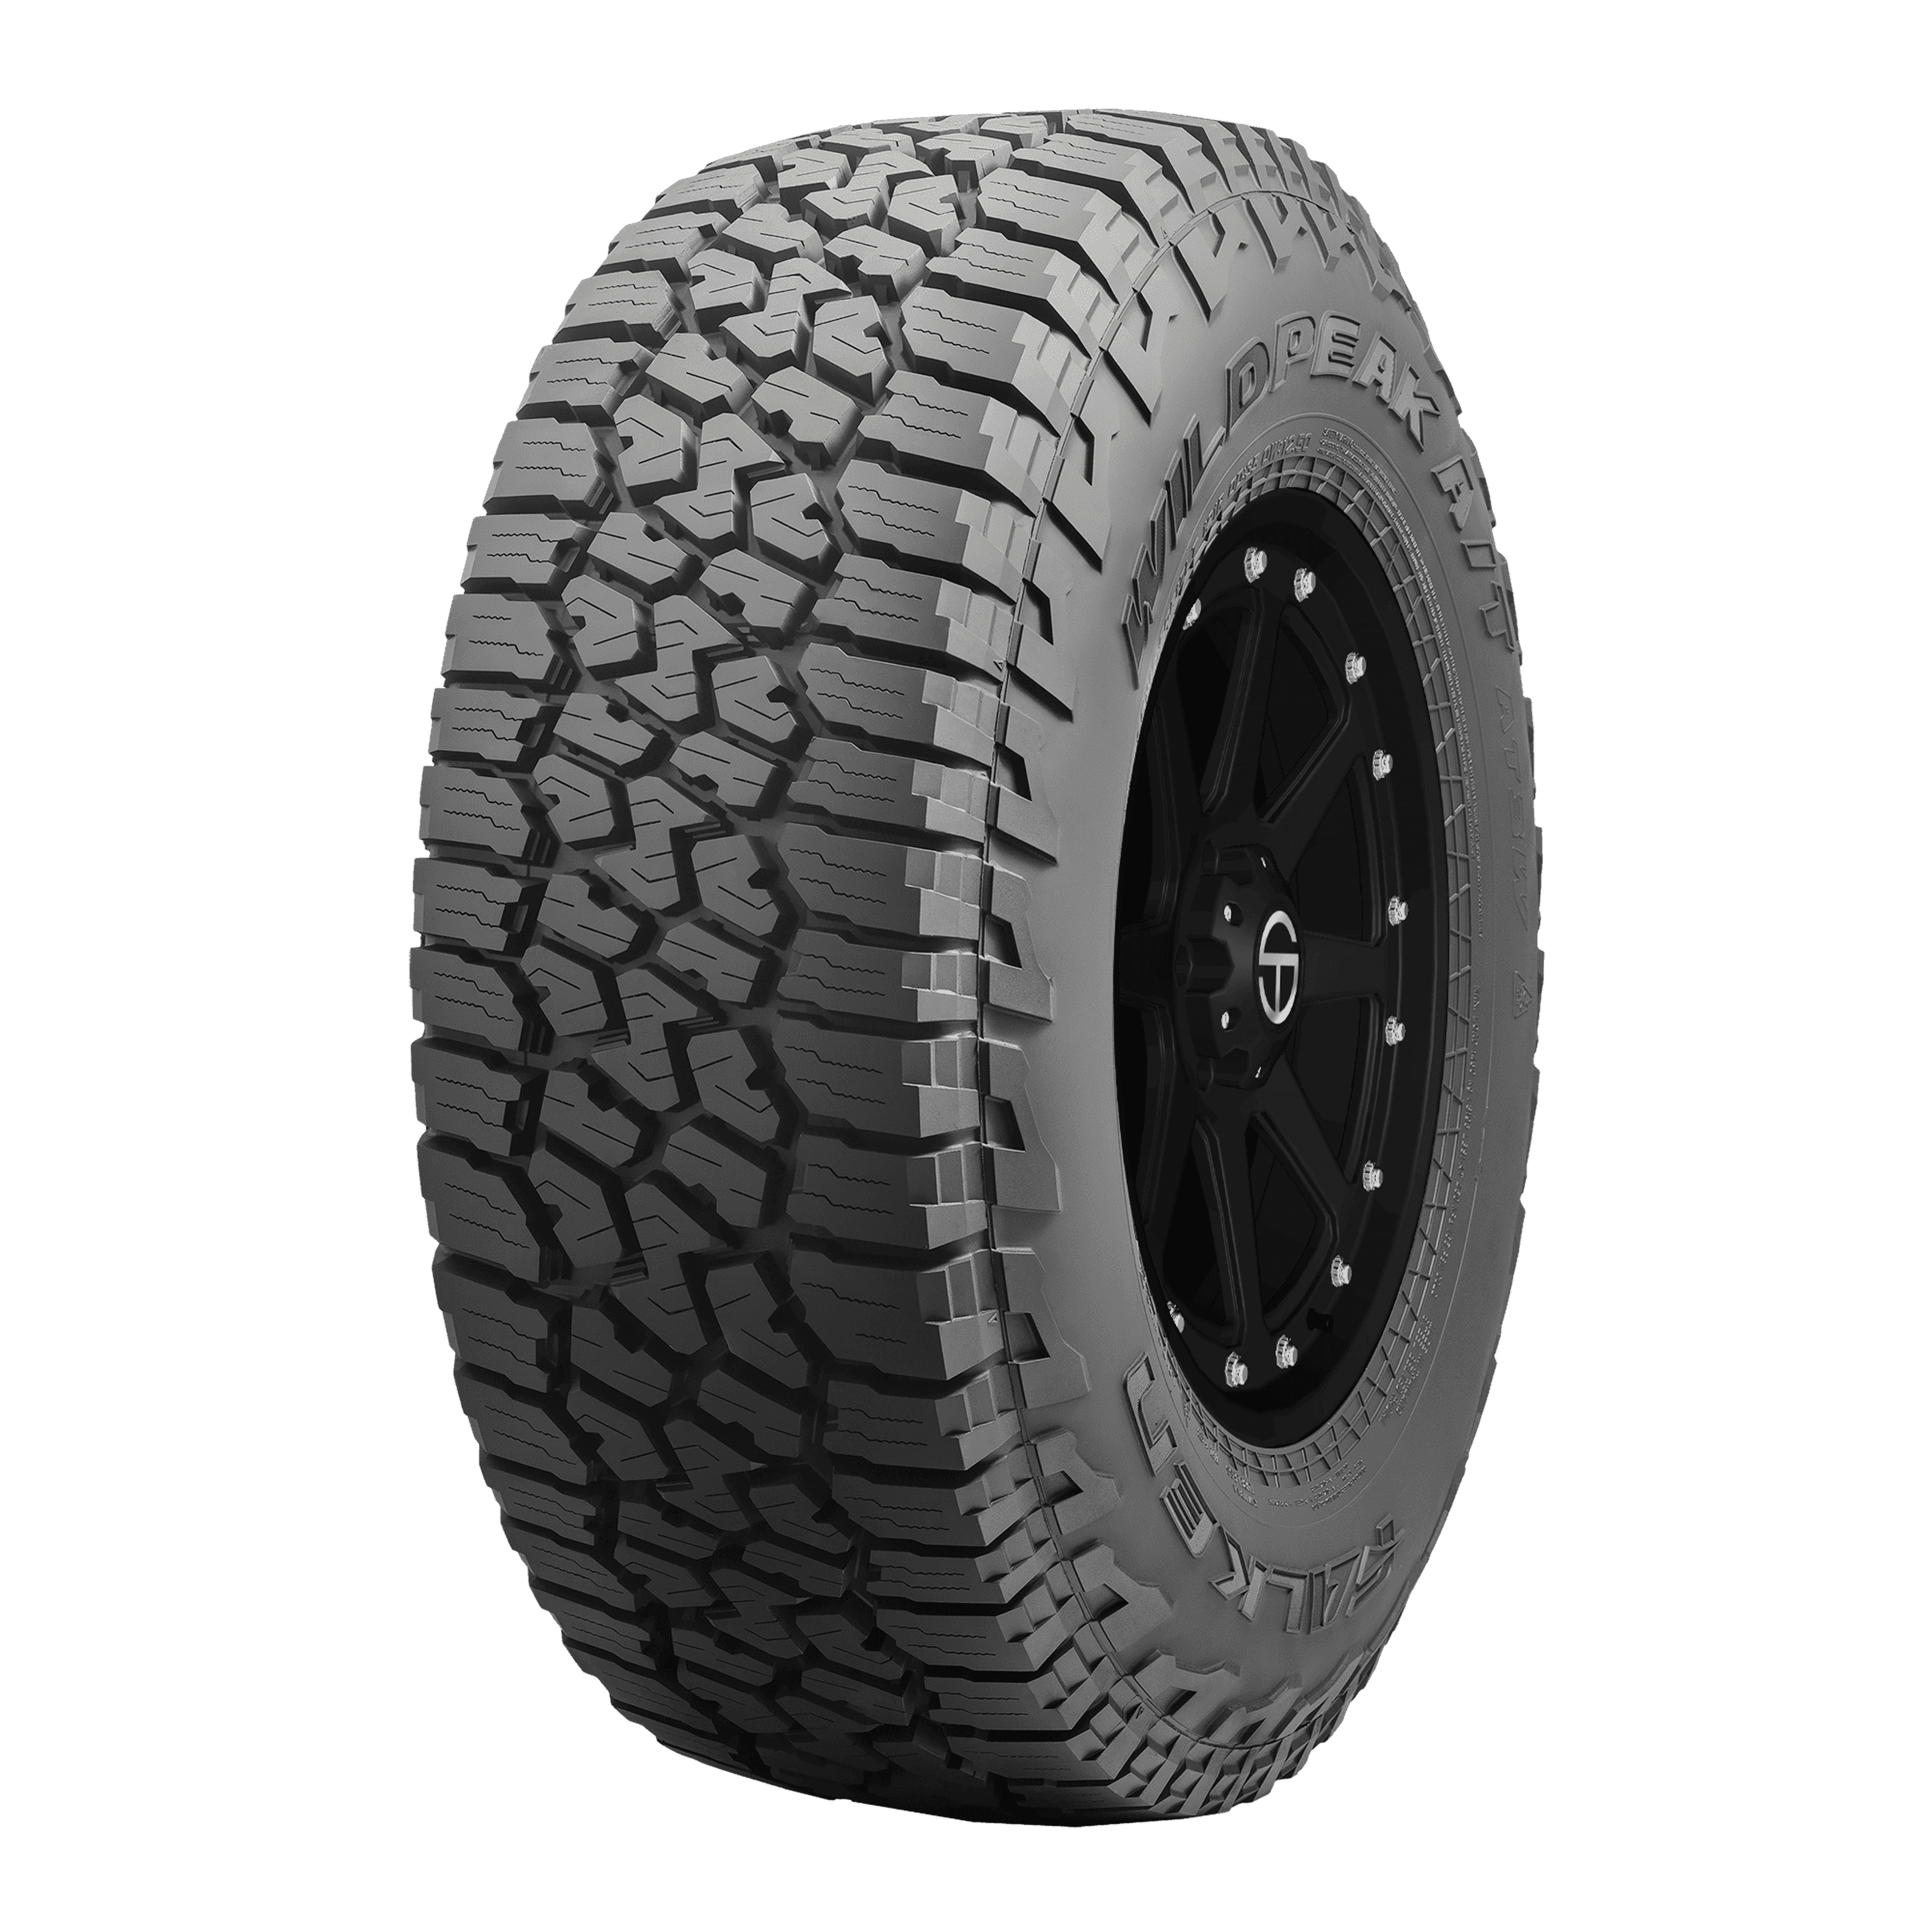 Buy Falken Wildpeak A/T3W Tires | SimpleTire Online